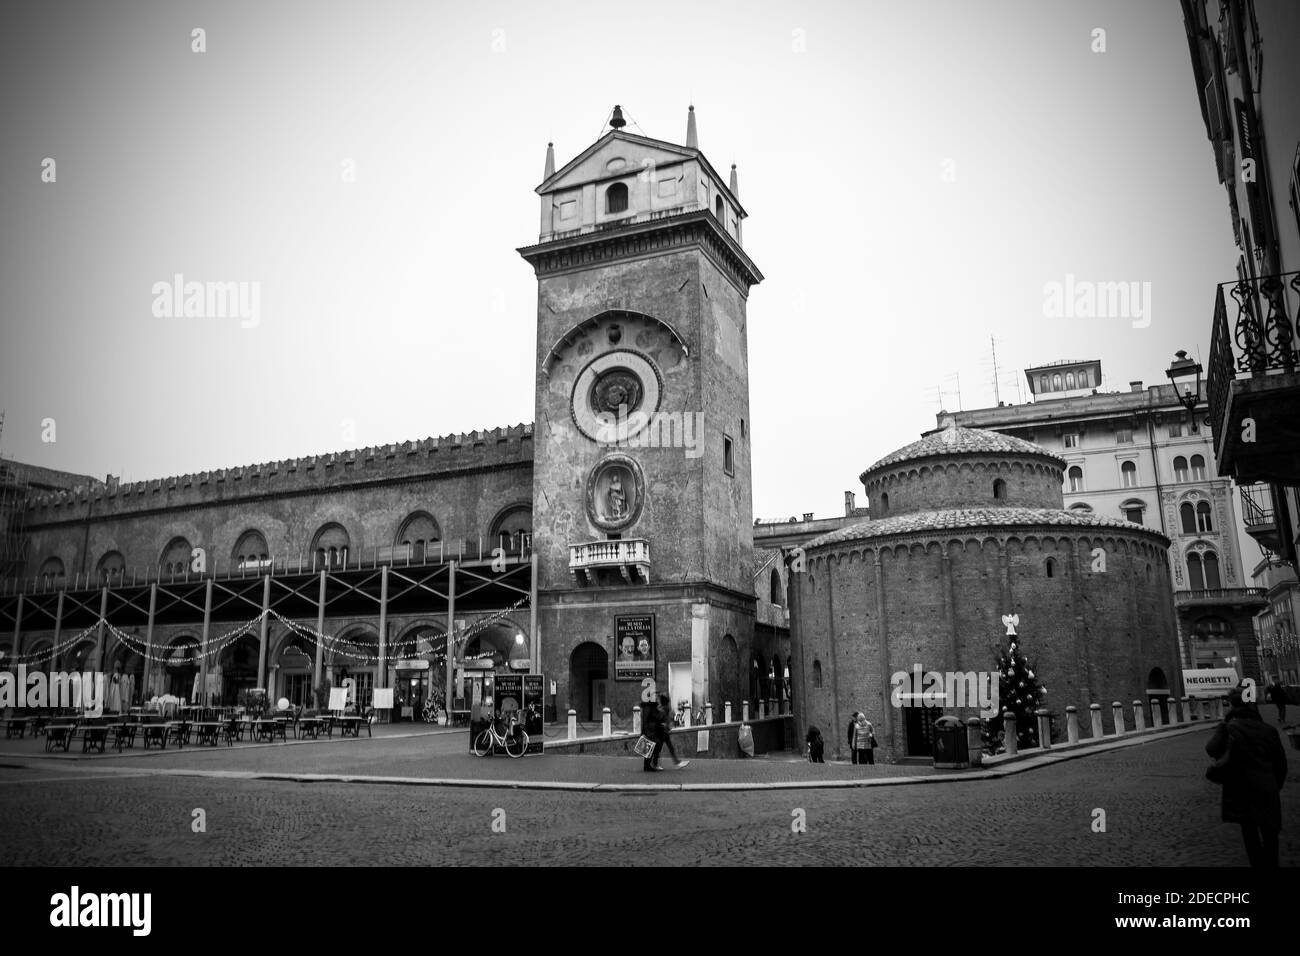 Mantova, Lombardia, Italia, 2015 dicembre: La Torre dell'Orologio e la chiesa della rotonda San Lorenzo che si trova in Piazza delle Erbe, nel periodo natalizio. Fotografia in bianco e nero. Foto Stock